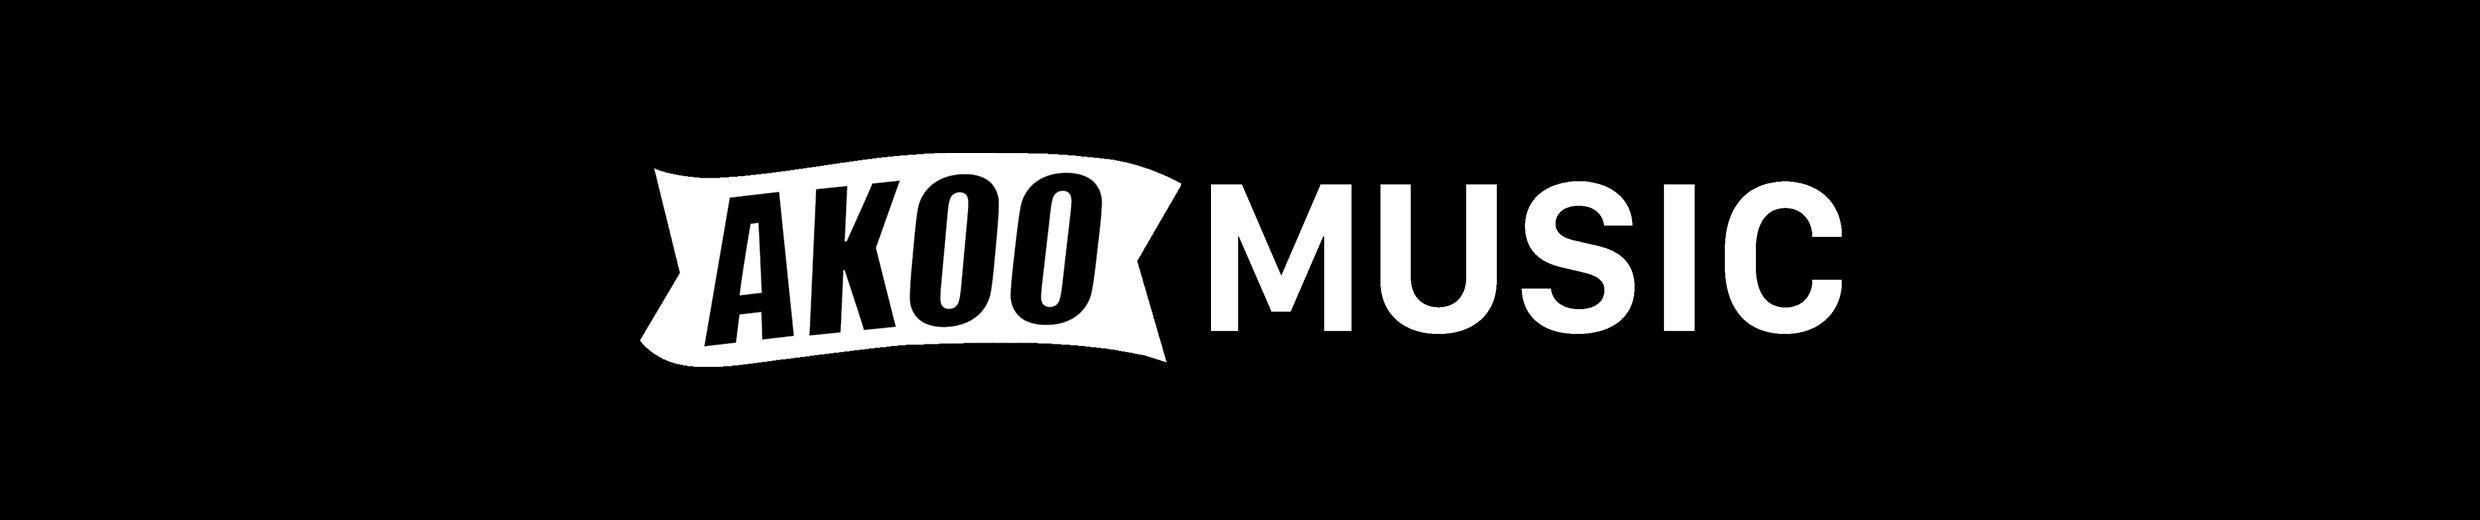 Akoo Logo - AKOO. AKOO CLOTHING. Free Listening on SoundCloud